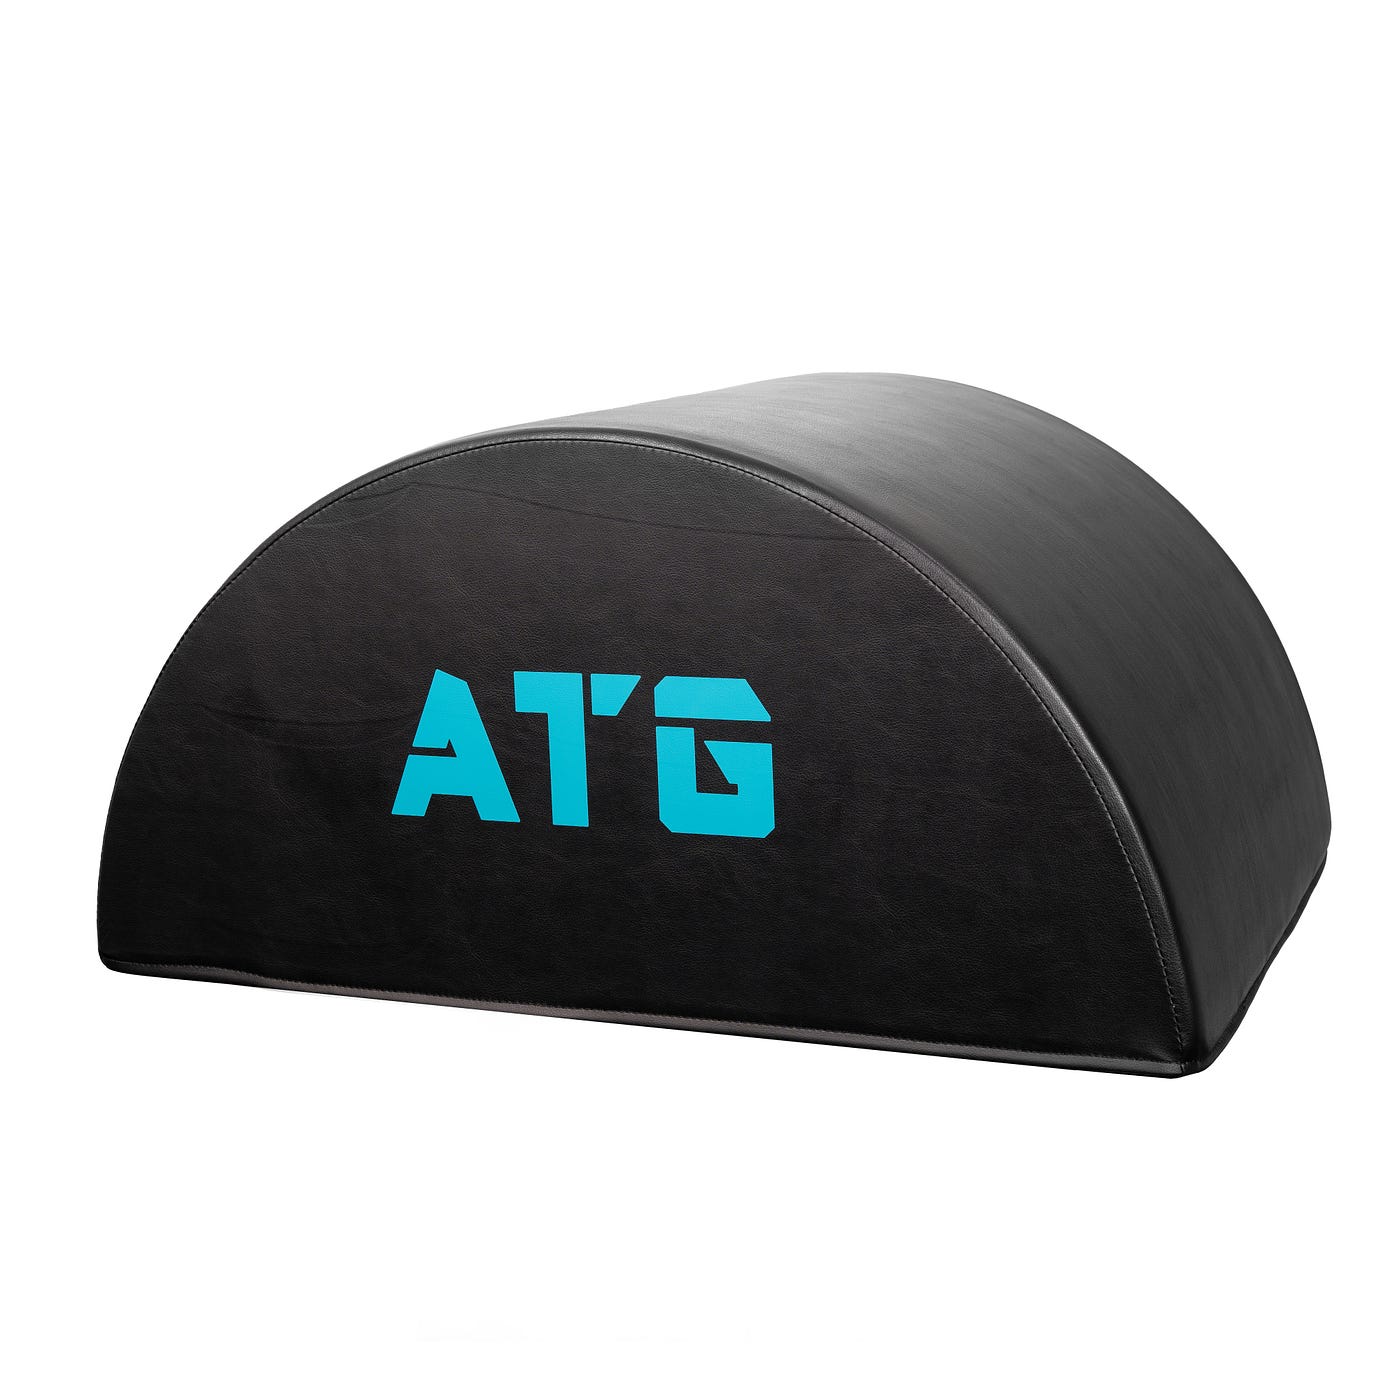 ATG Members - Slant Board - Slant Board Guy USA & Americas